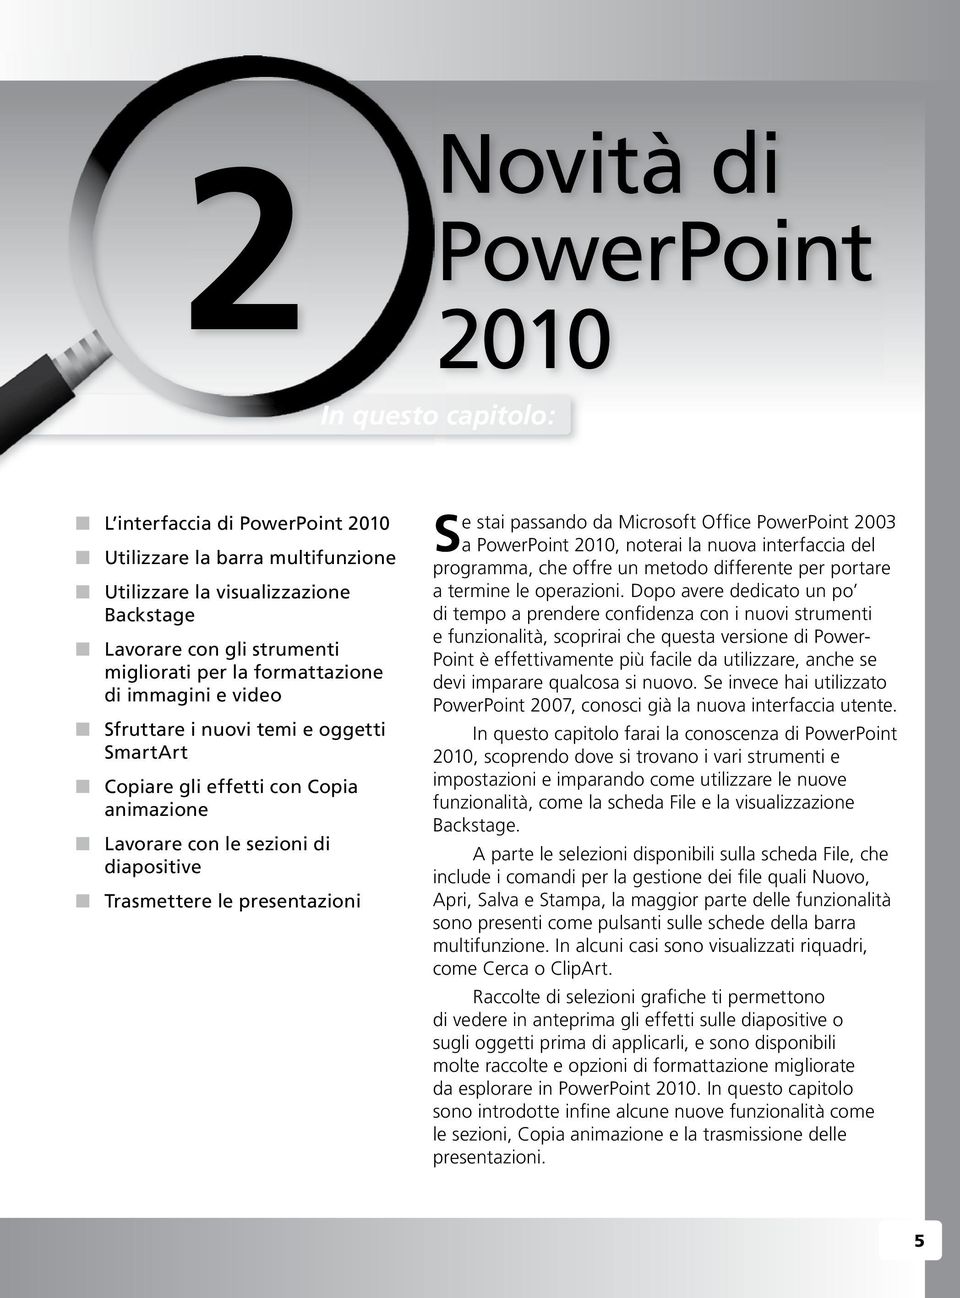 passando da Microsoft Office PowerPoint 200 a PowerPoint 2010, noterai la nuova interfaccia del programma, che offre un metodo differente per portare a termine le operazioni.